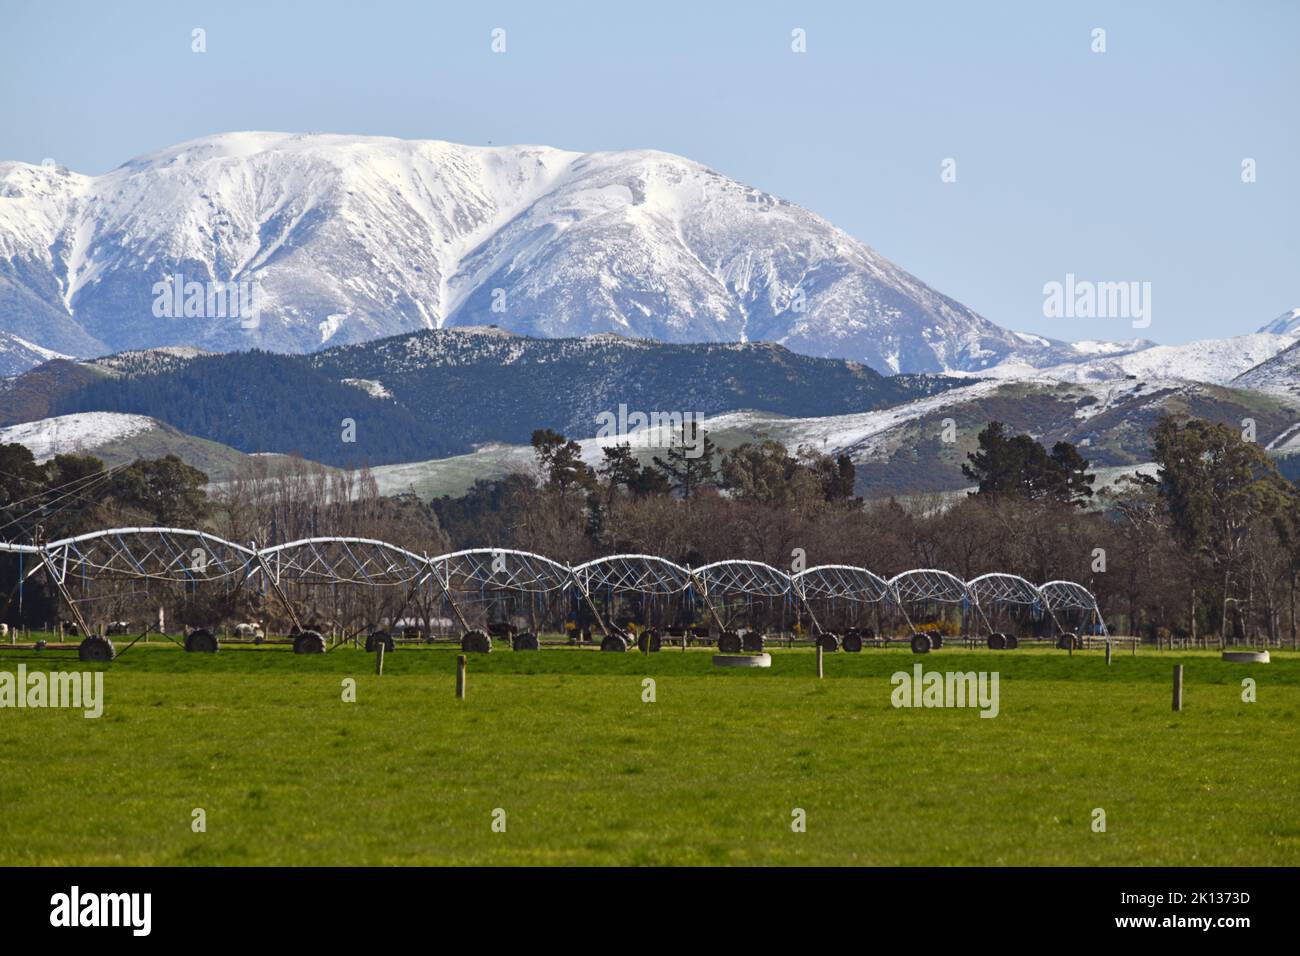 Paesaggio iconico a Canterbury, Nuova Zelanda, con una fattoria con attrezzi per l'irrigazione e la Torlesse Range irrorata da una rara nevicata primaverile nel Foto Stock